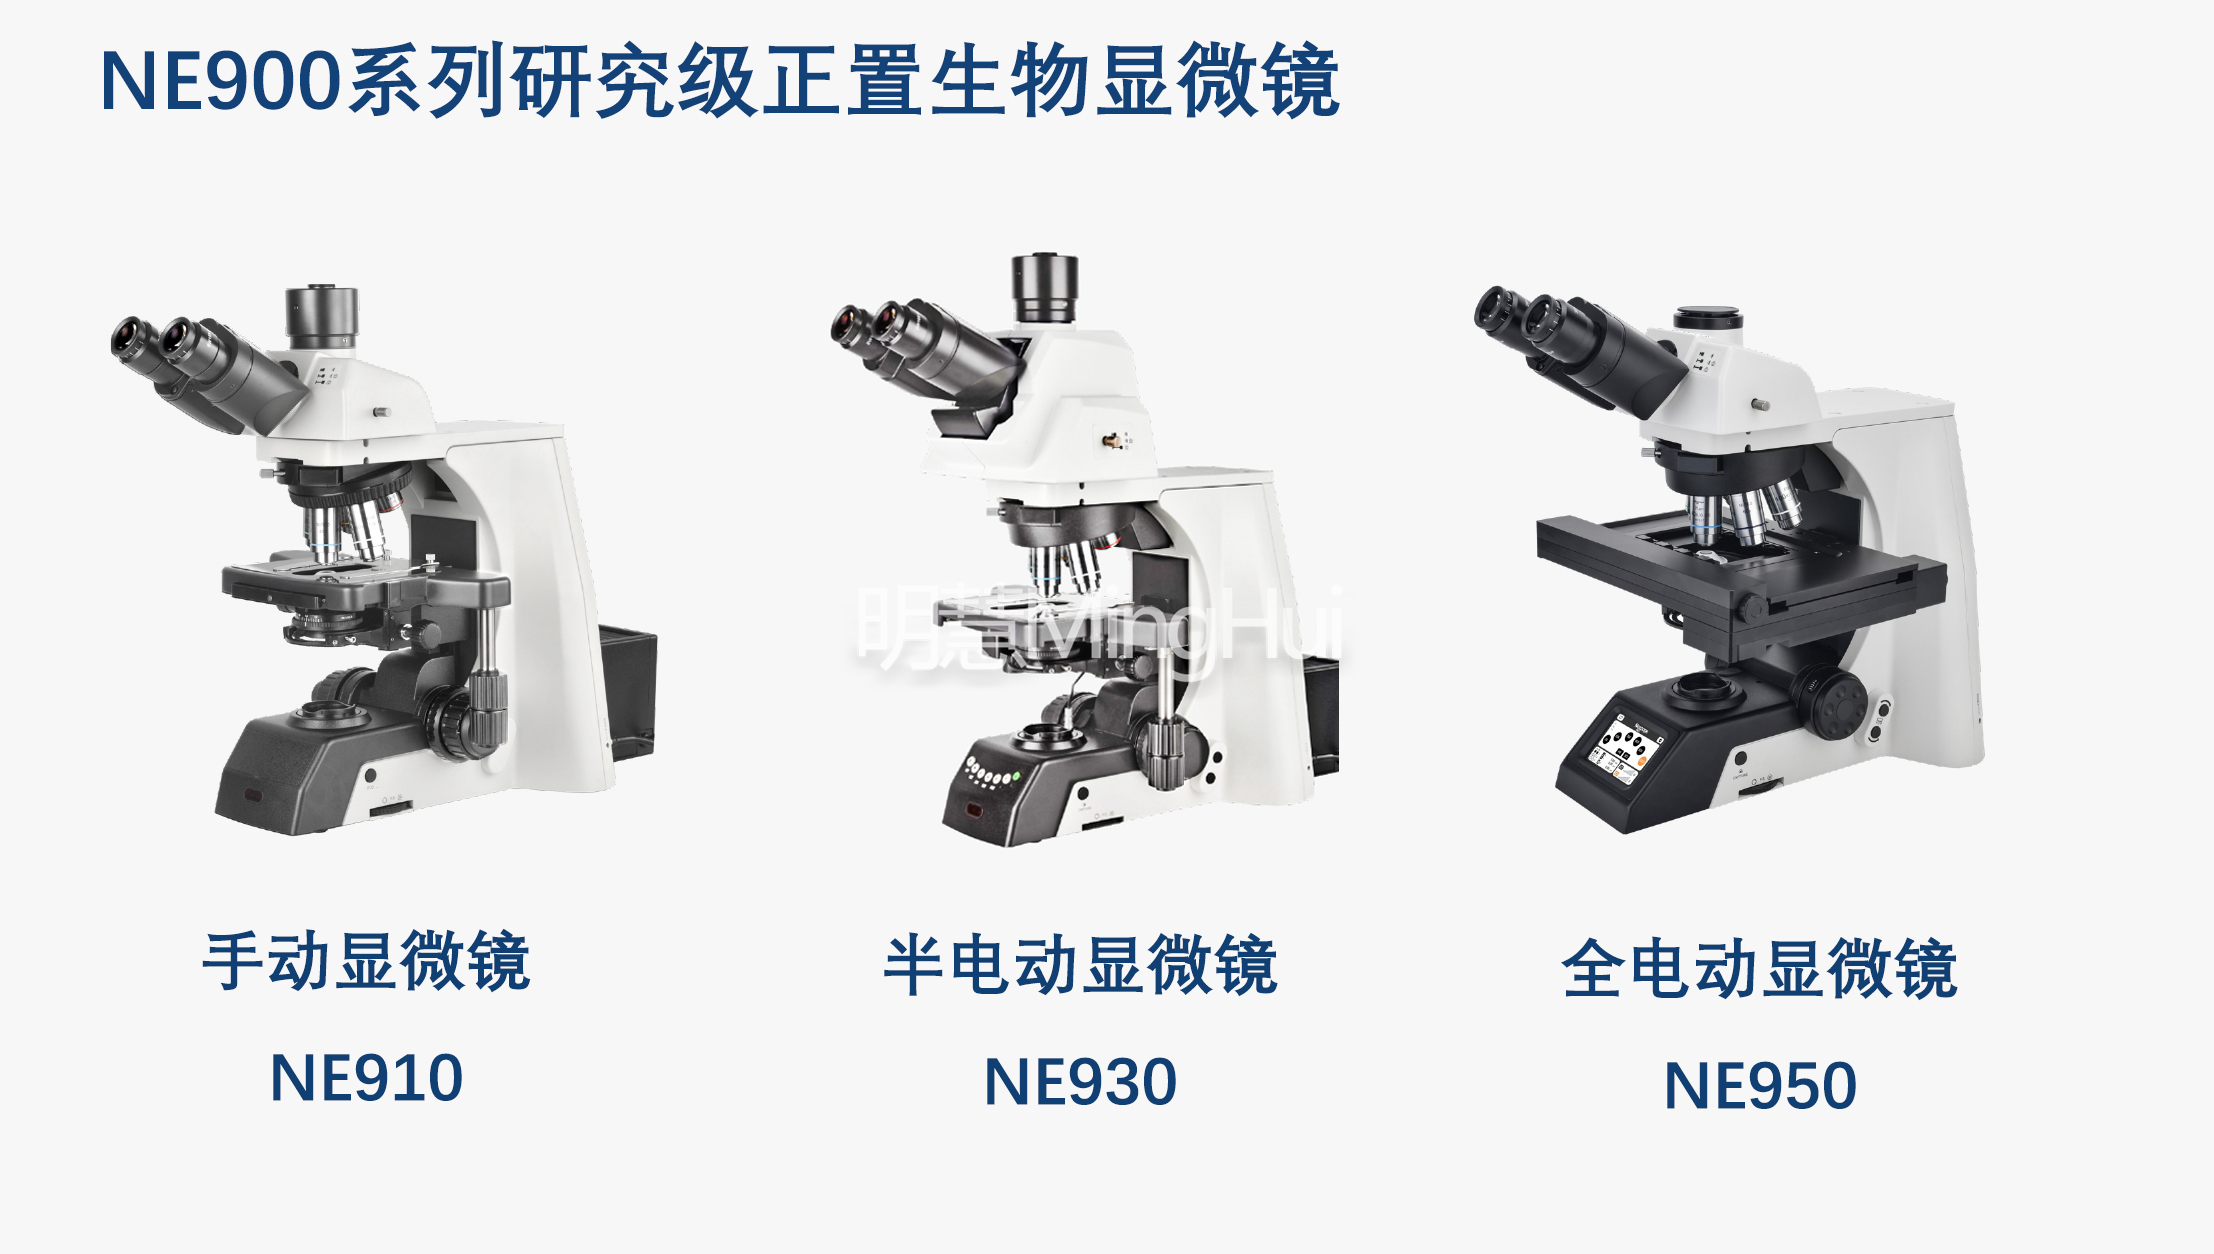 广州明慧科技供应电动显微镜，助力科研领域实现效率与质量提升